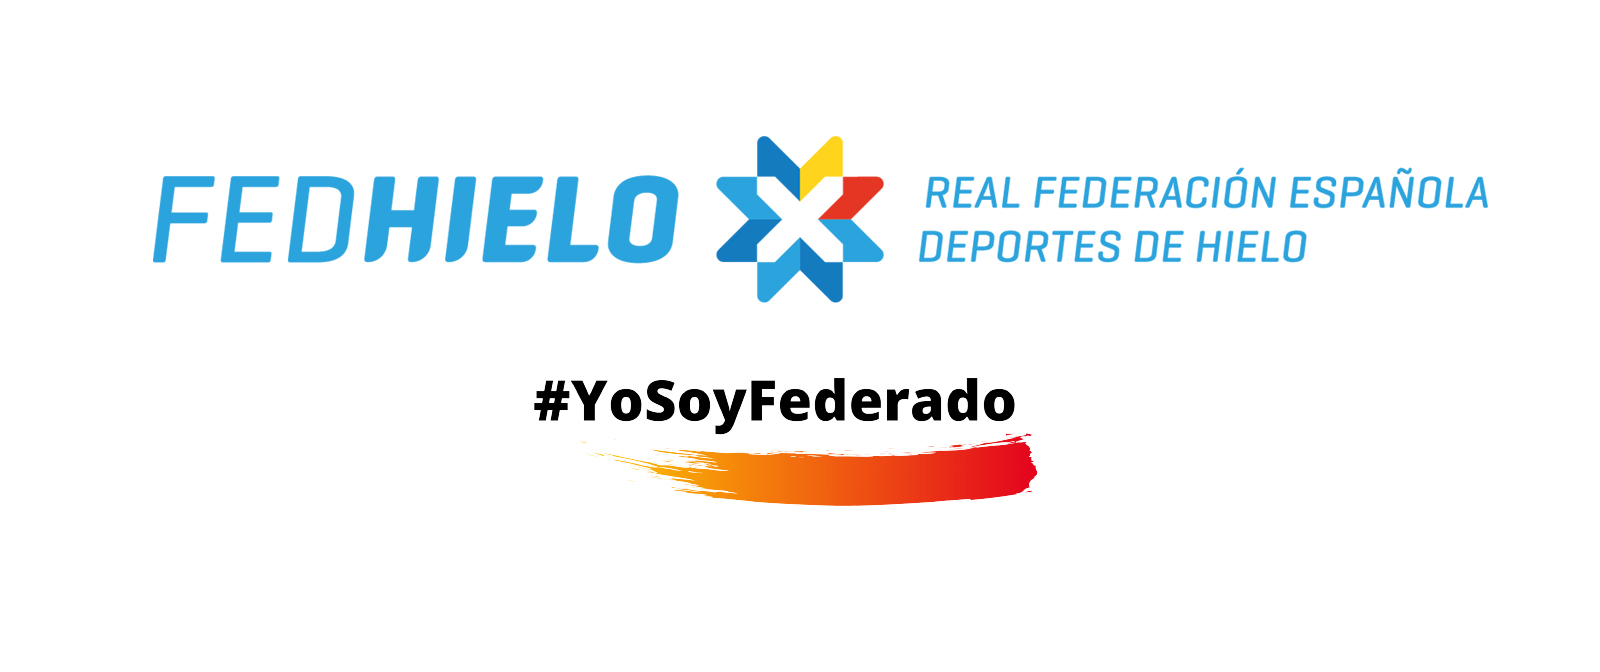 Fedérate, La RFEDH se apunta a la campaña «Fedérate» de ADESP, Real Federación Española Deportes de Hielo